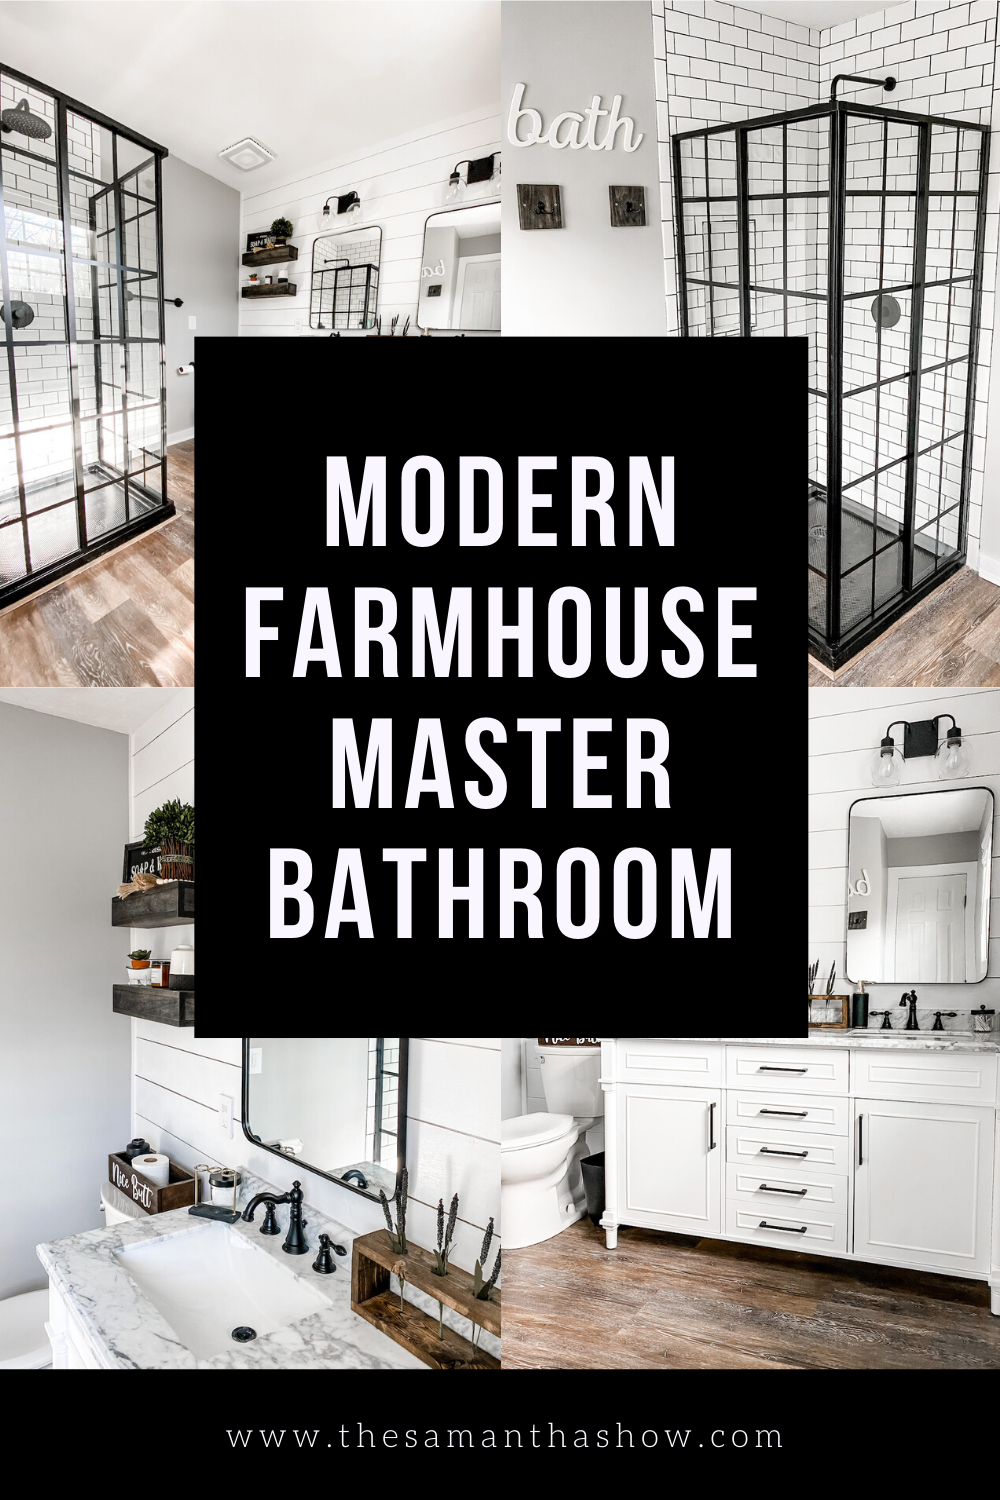 Kitchen & Bath - Home Trends Magazine